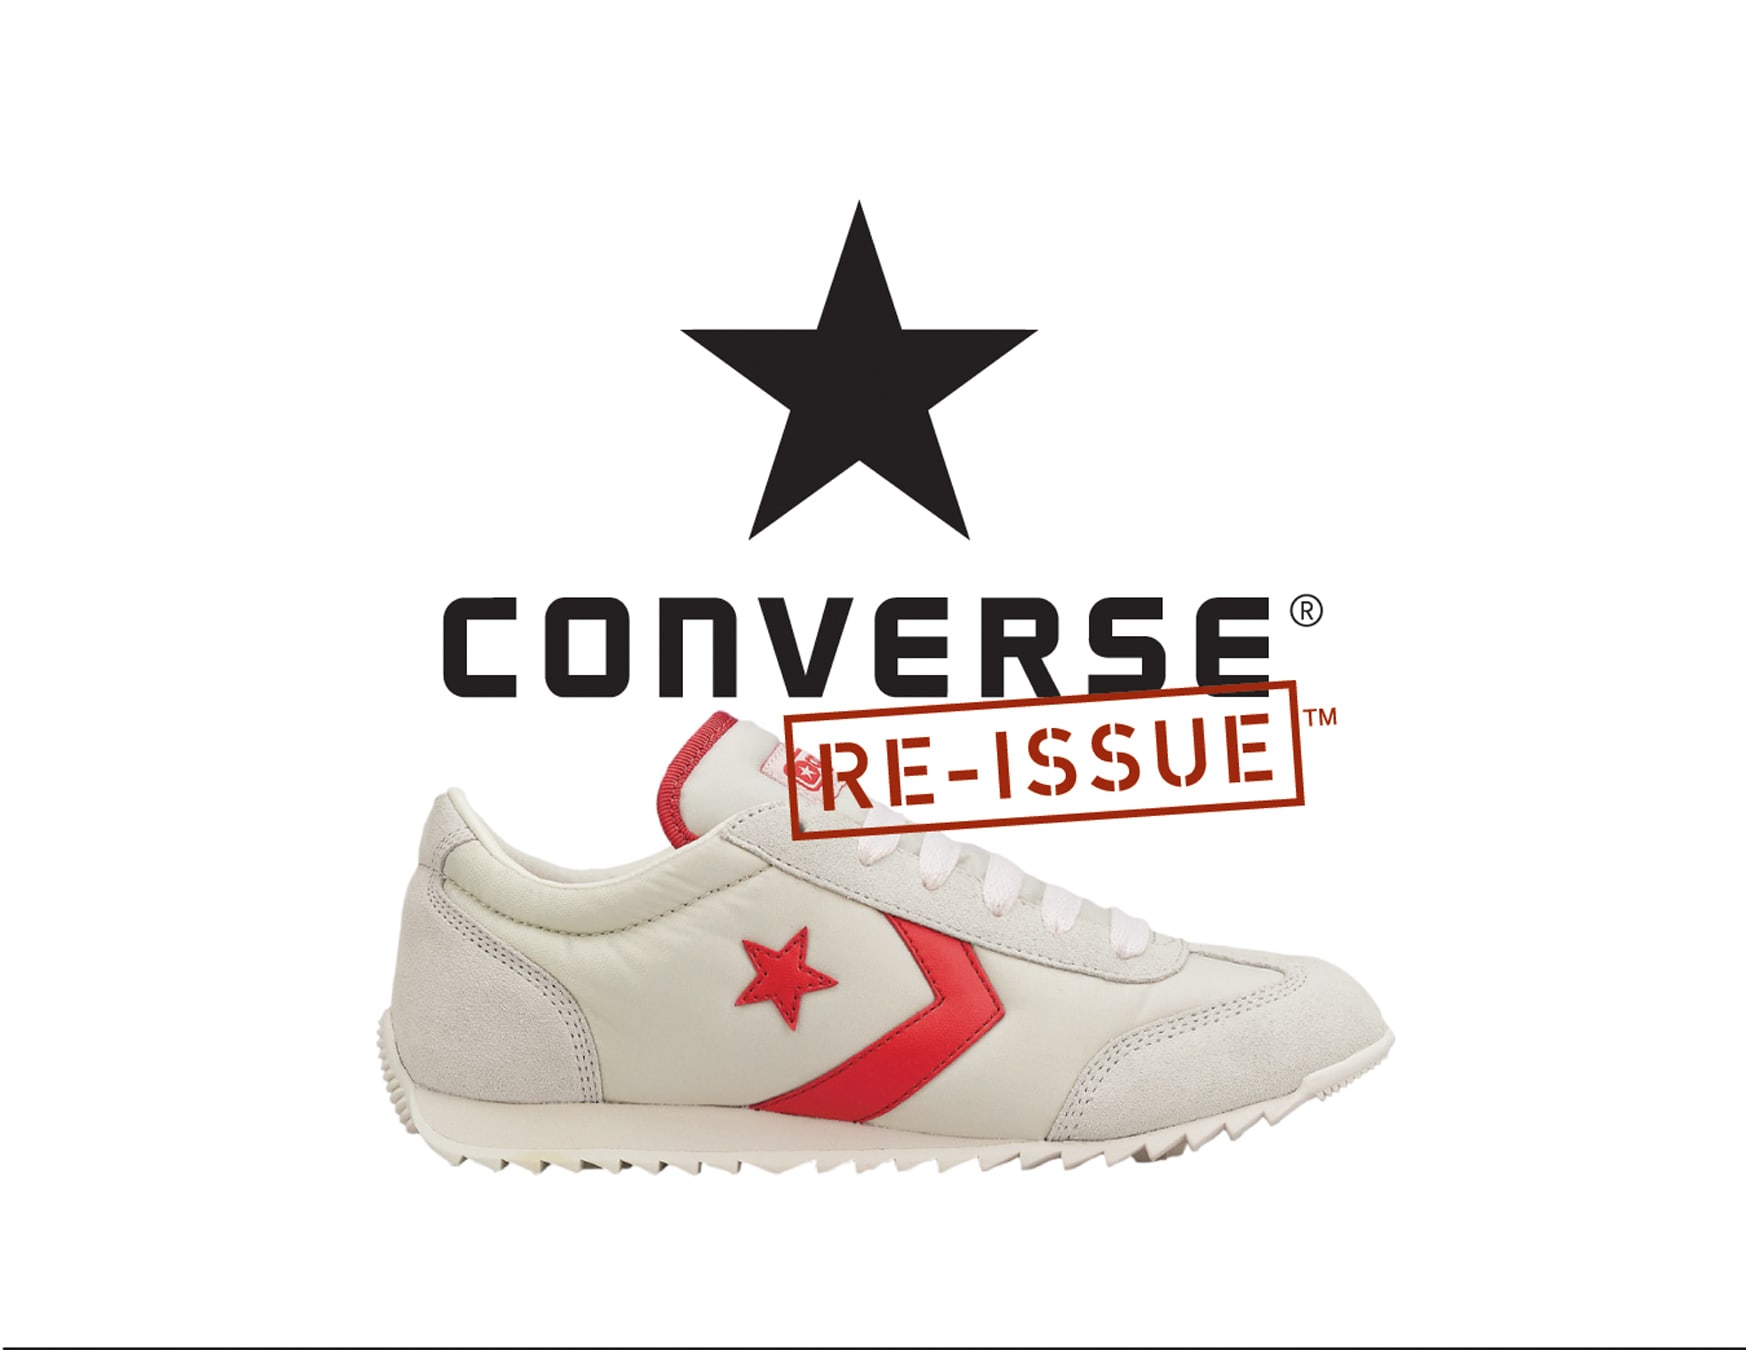 Converse Reissue advertising design